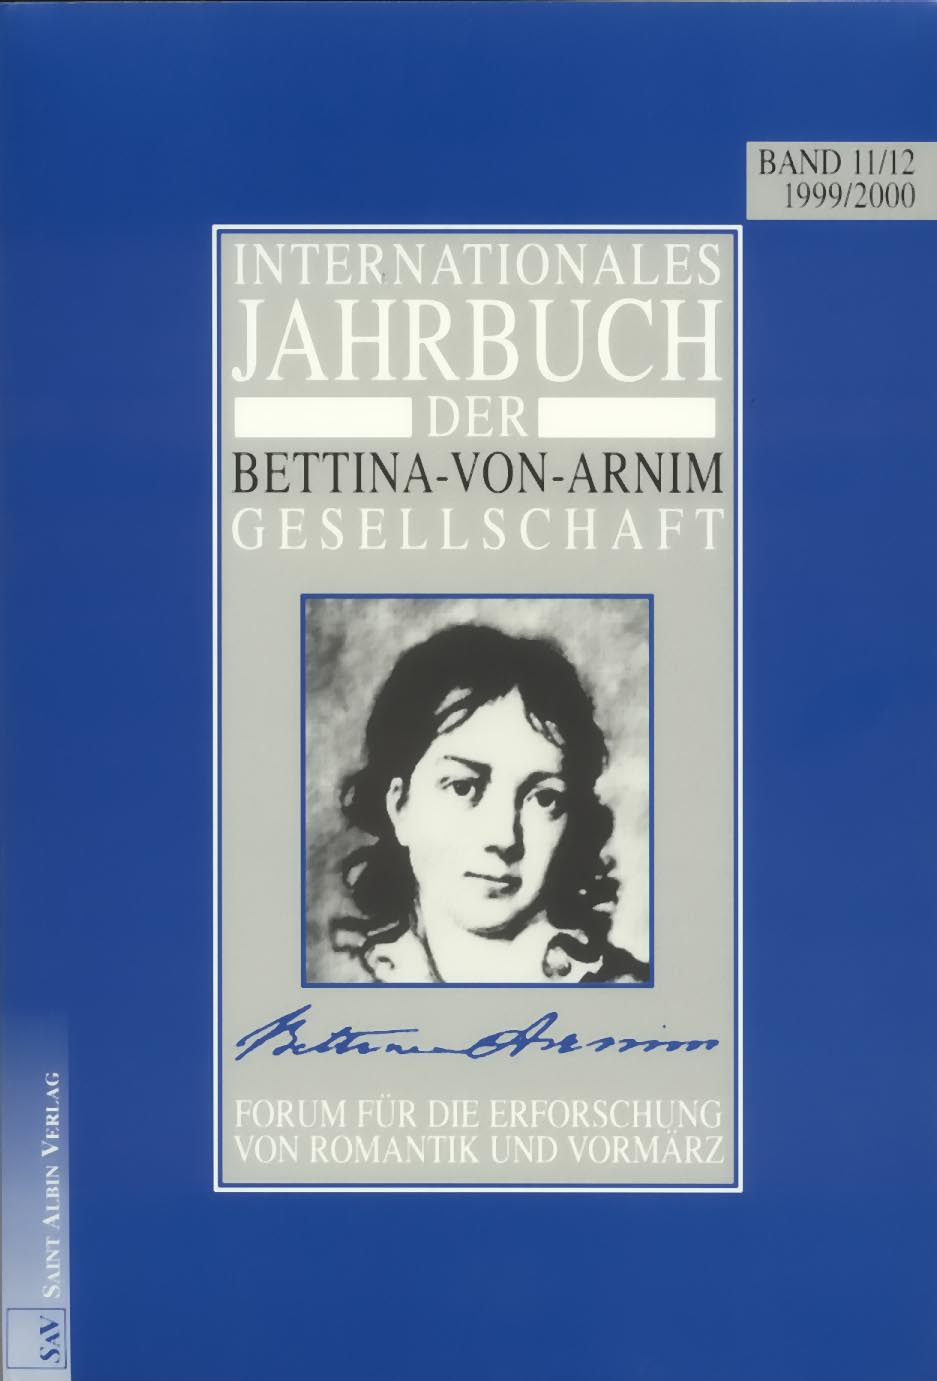 Umschlag von Band 11/12 des Internationalen Jahrbuchs der Bettina-von-Arnim-Gesellschaft'